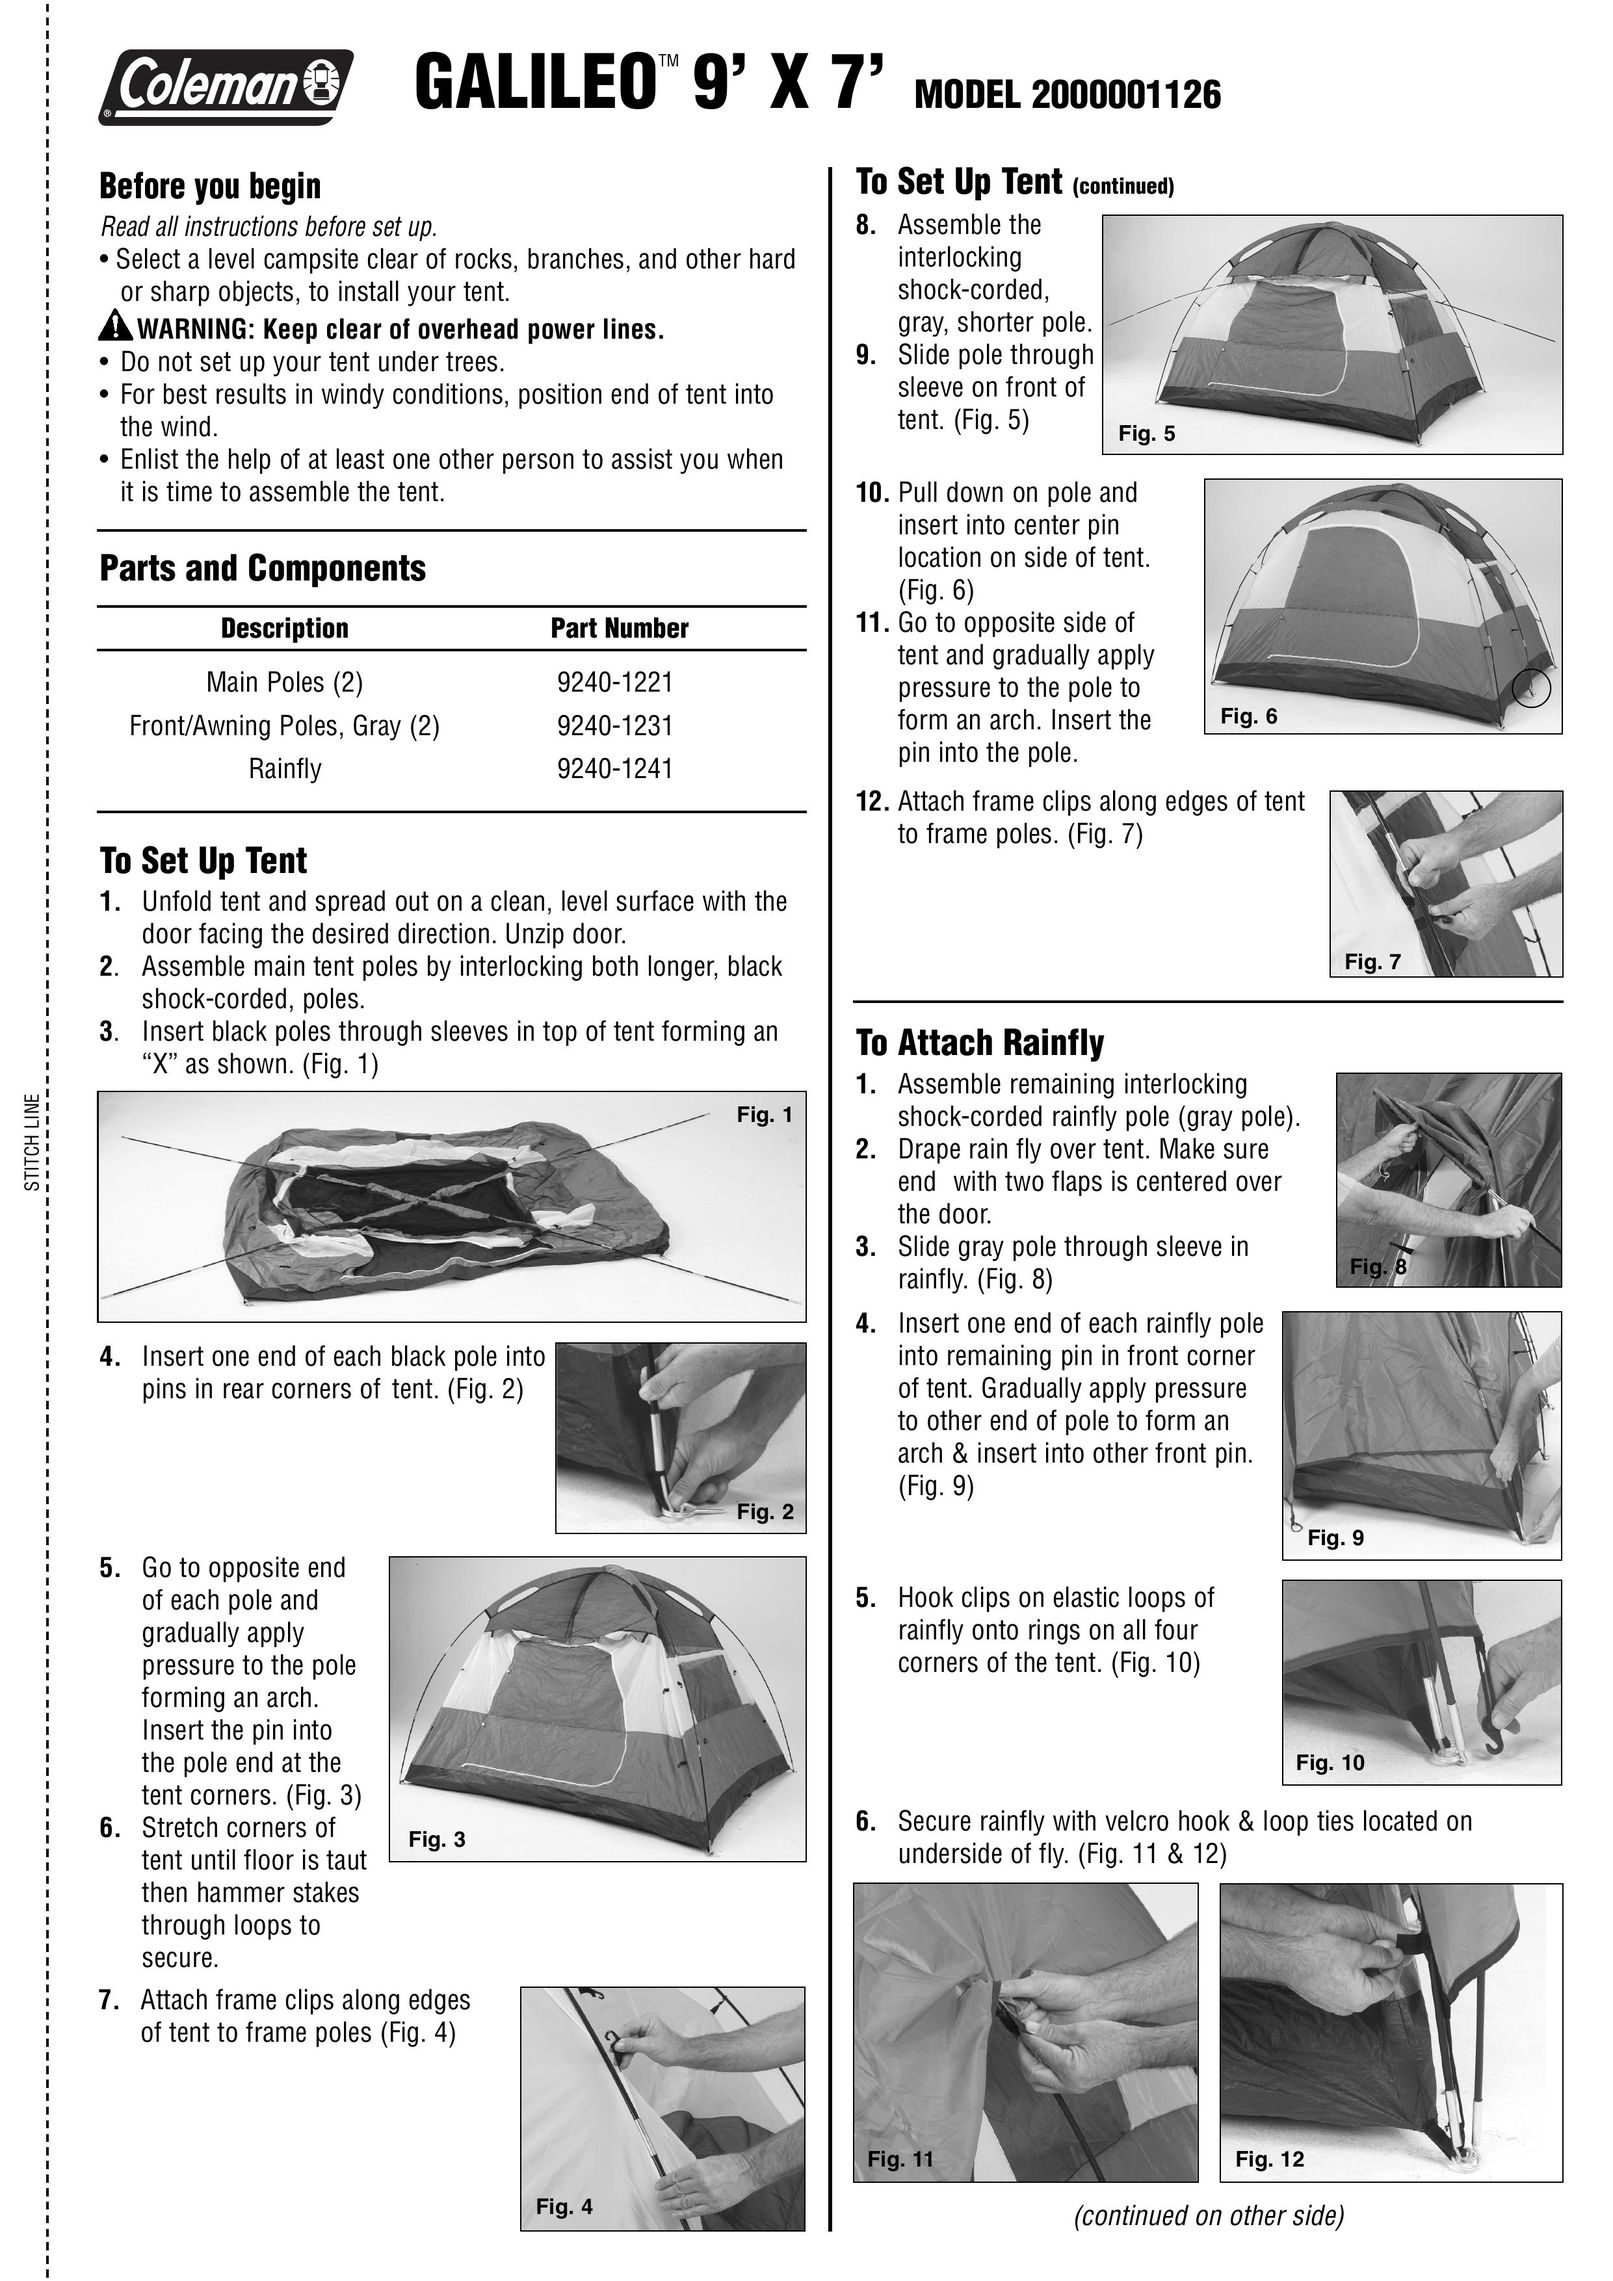 Coleman 2000001126 Tent User Manual